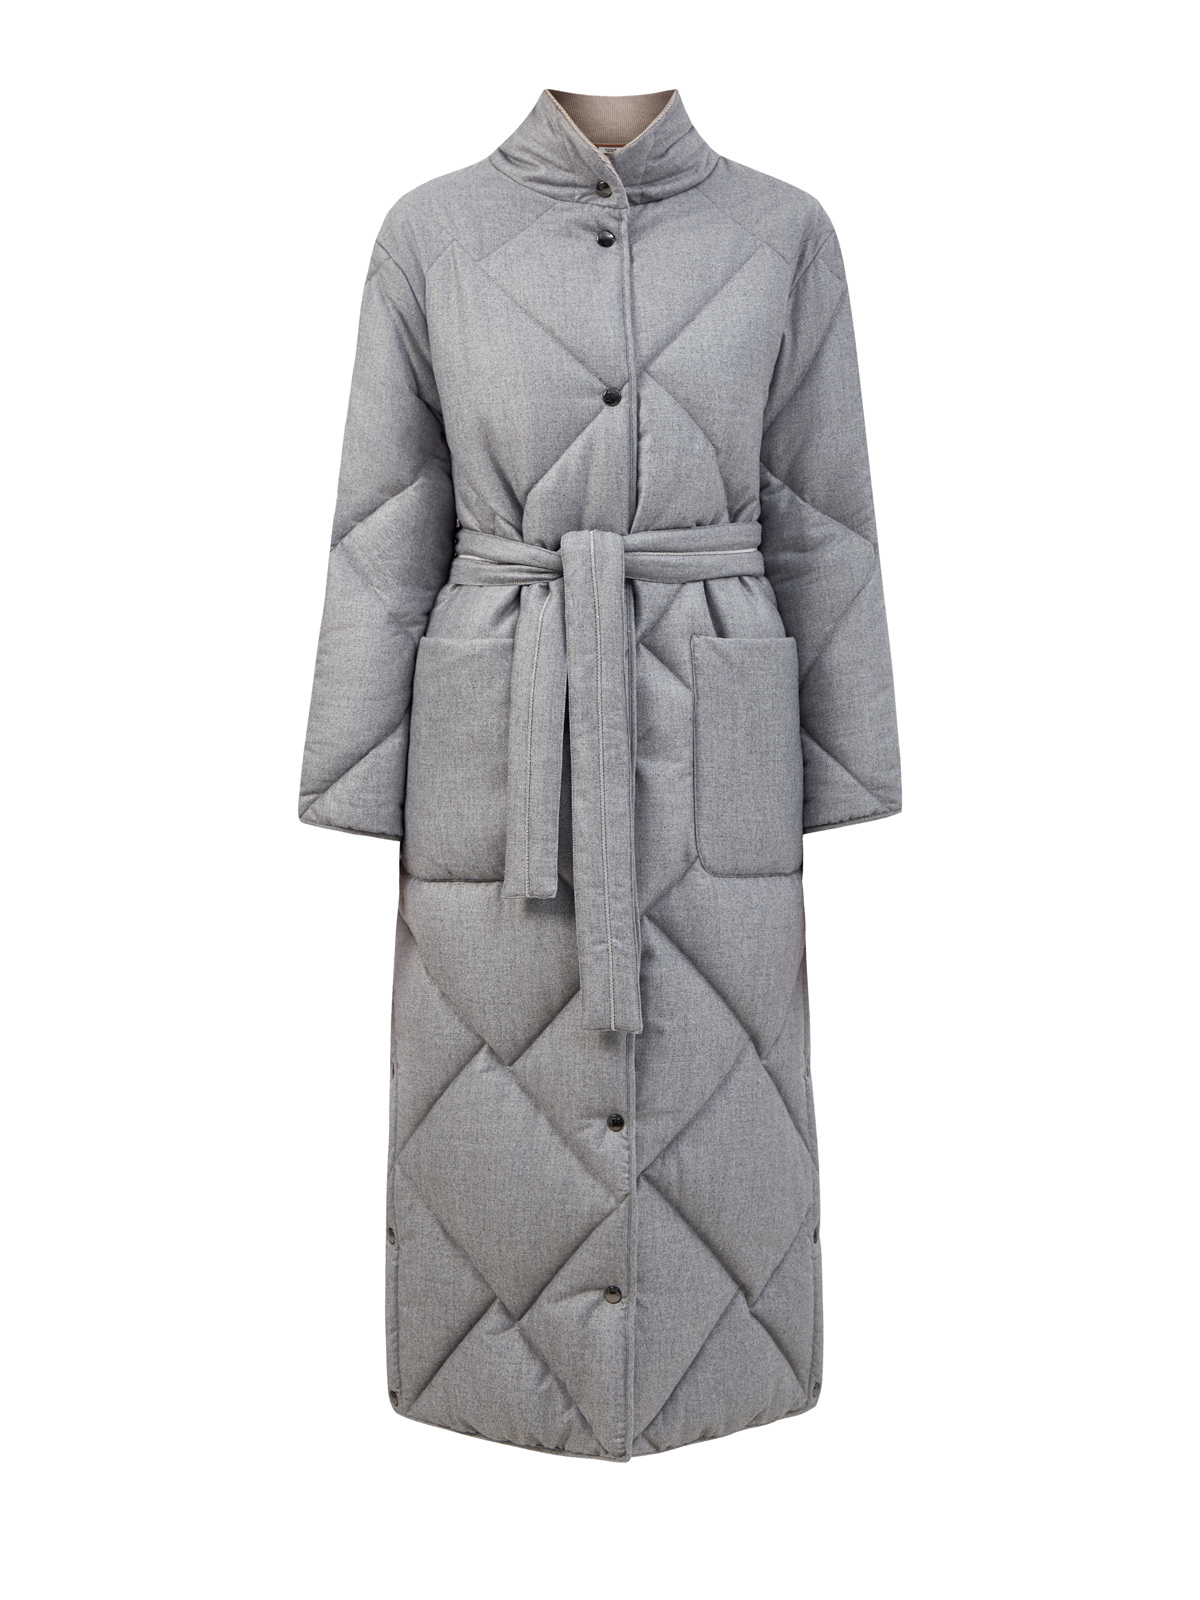 Удлиненное пальто из стеганой фланели с поясом Punto Luce